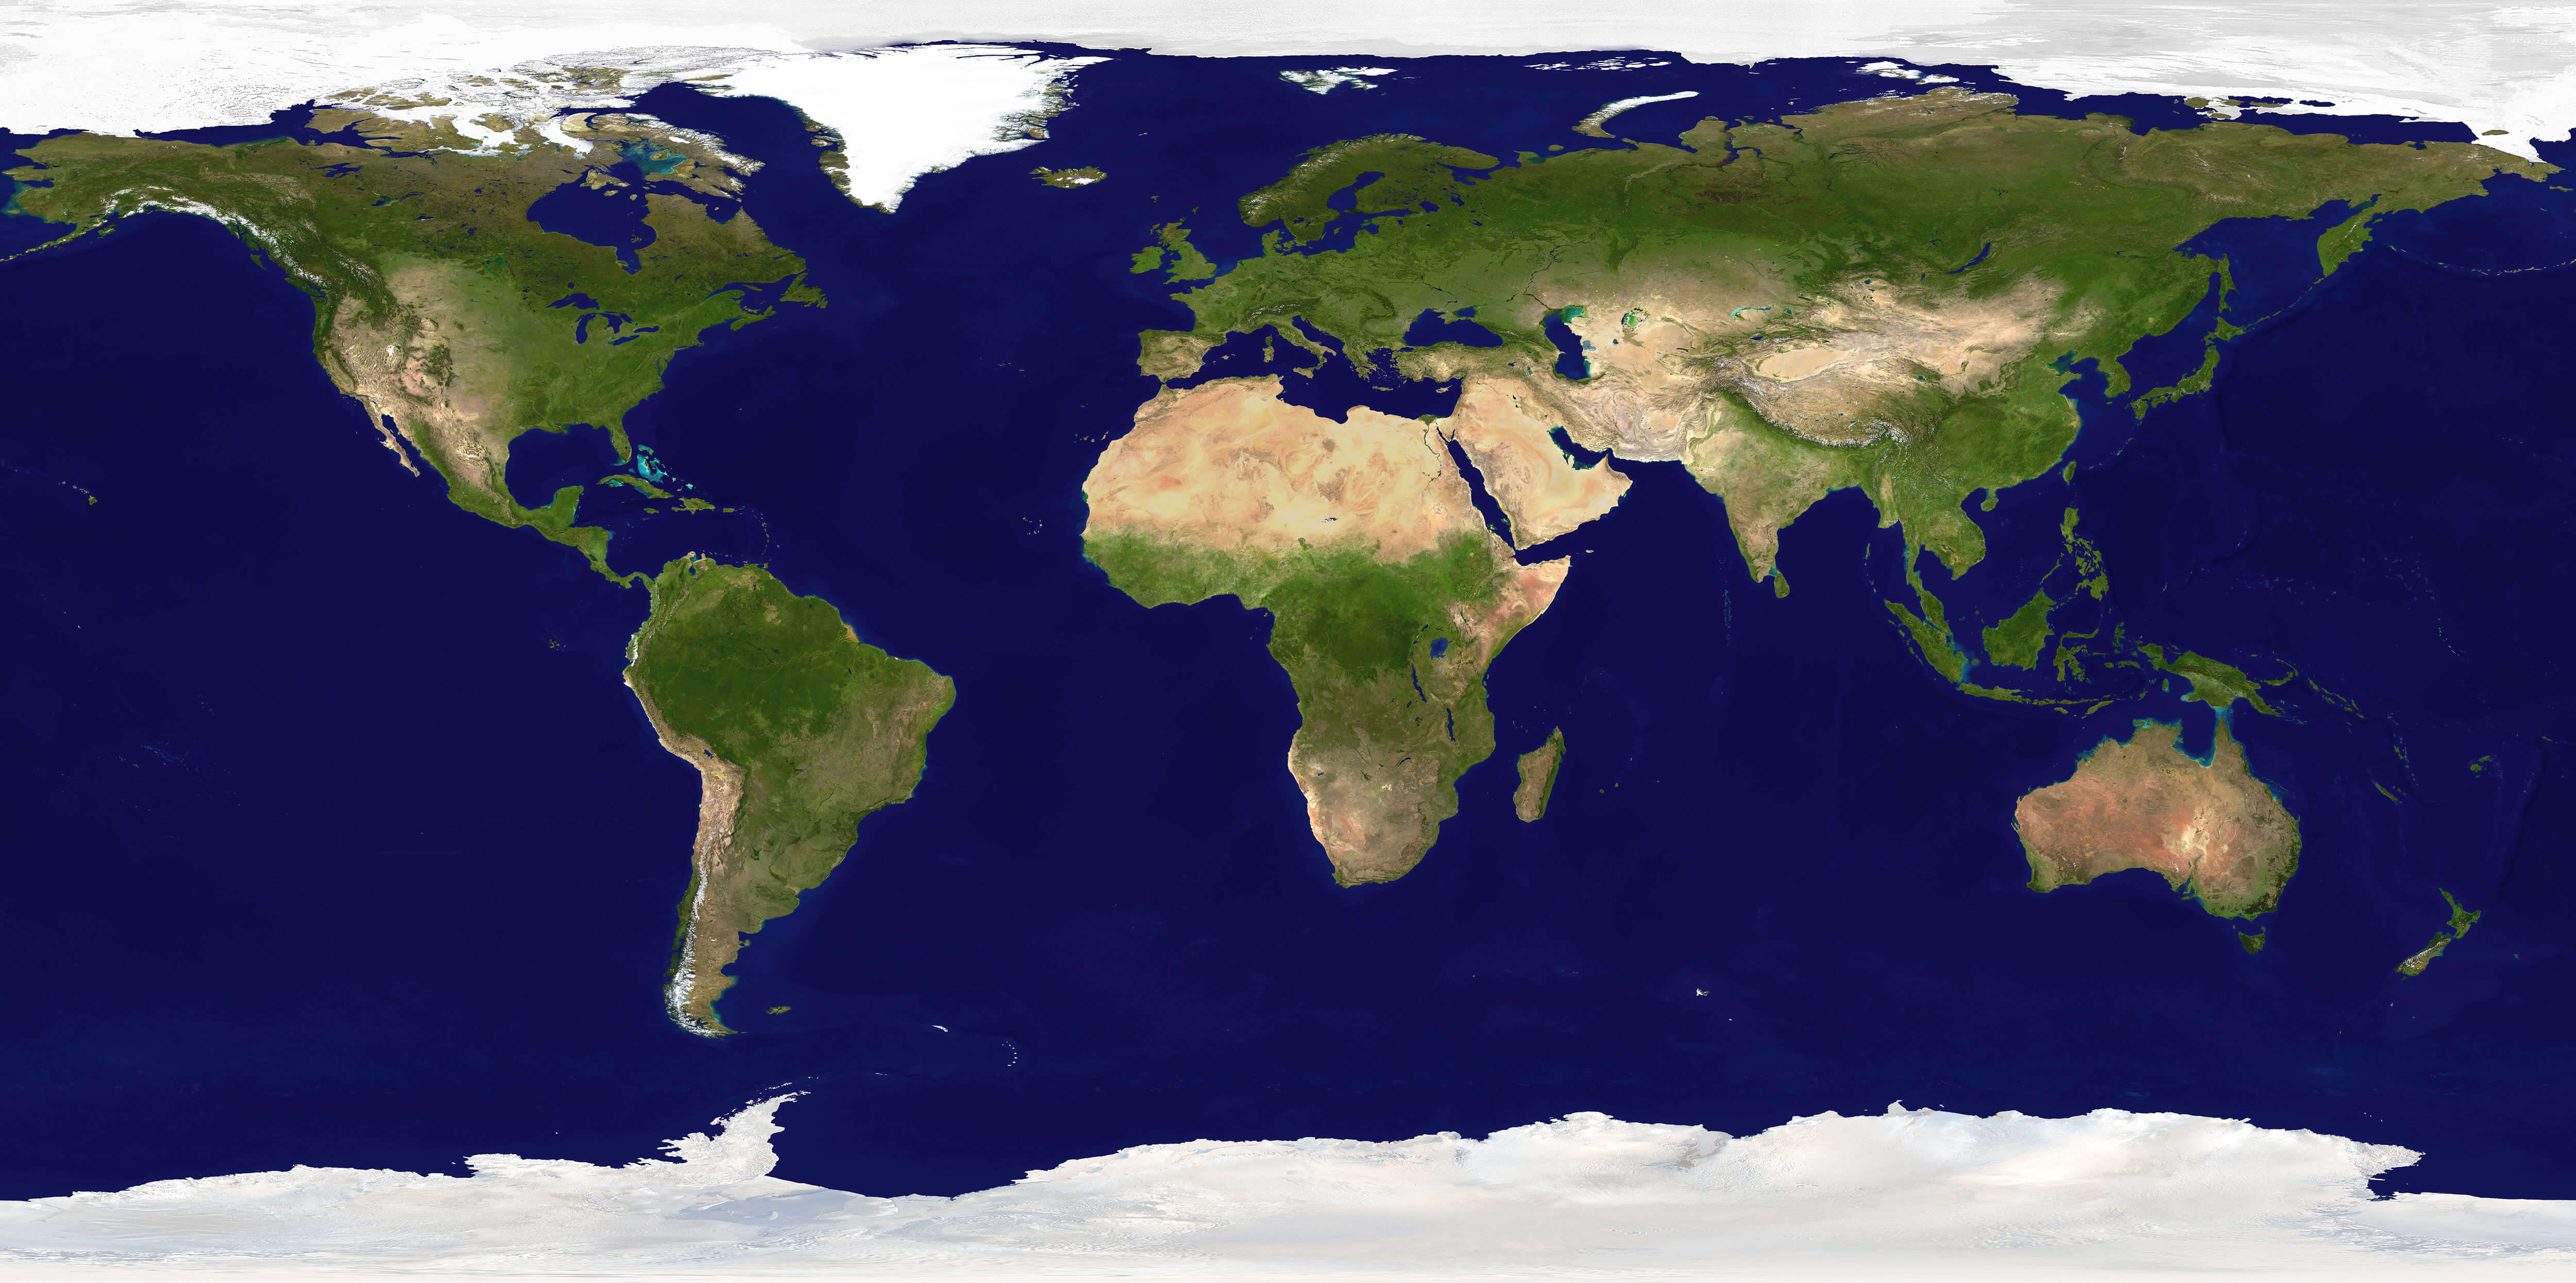 world satellite map online